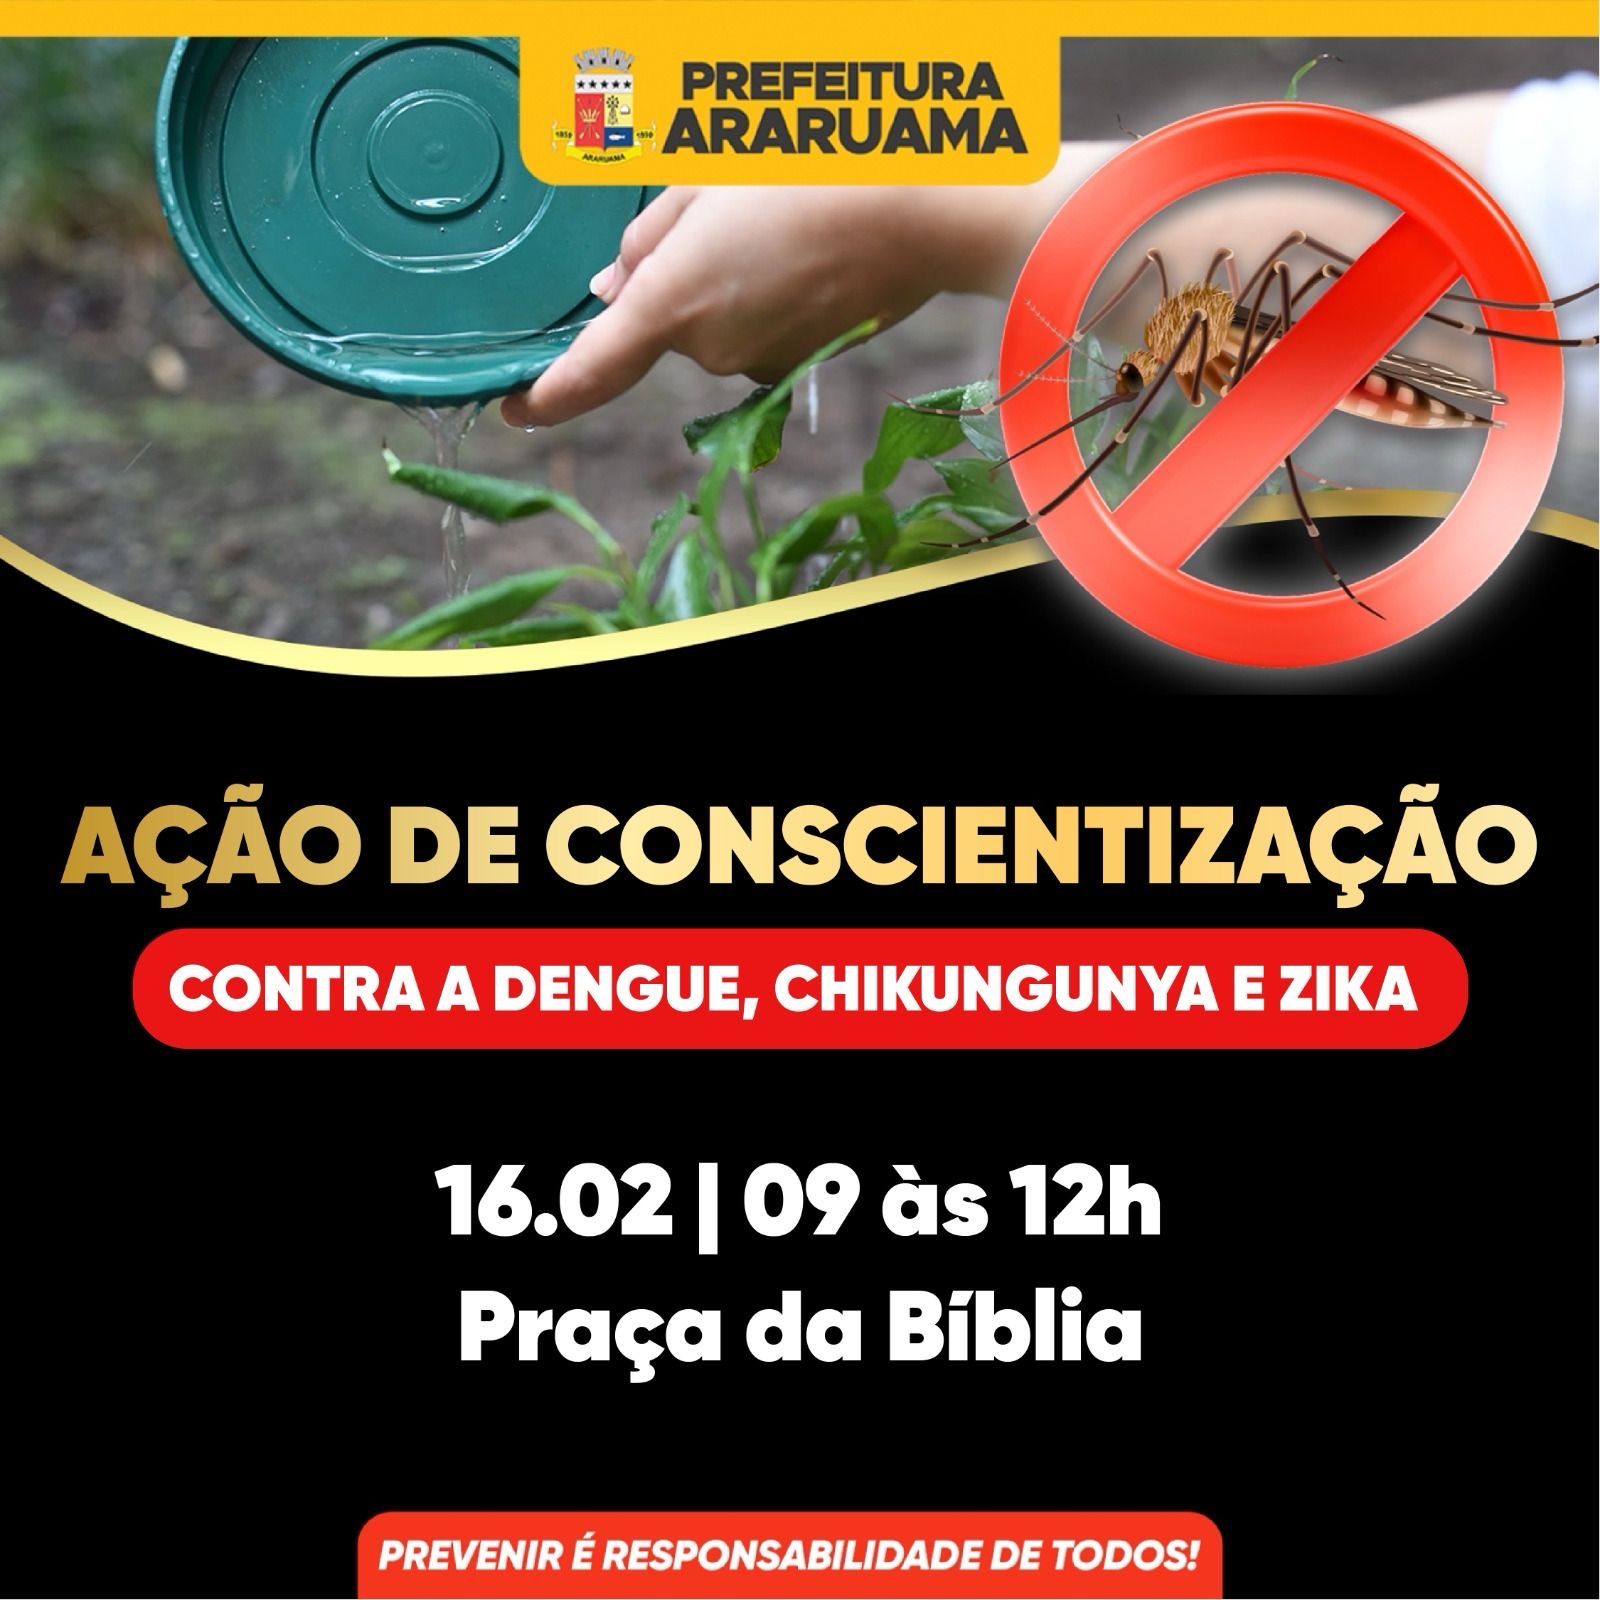 Prefeitura vai realizar uma ação de combate à dengue na Praça da Bíblia nessa sexta-feira